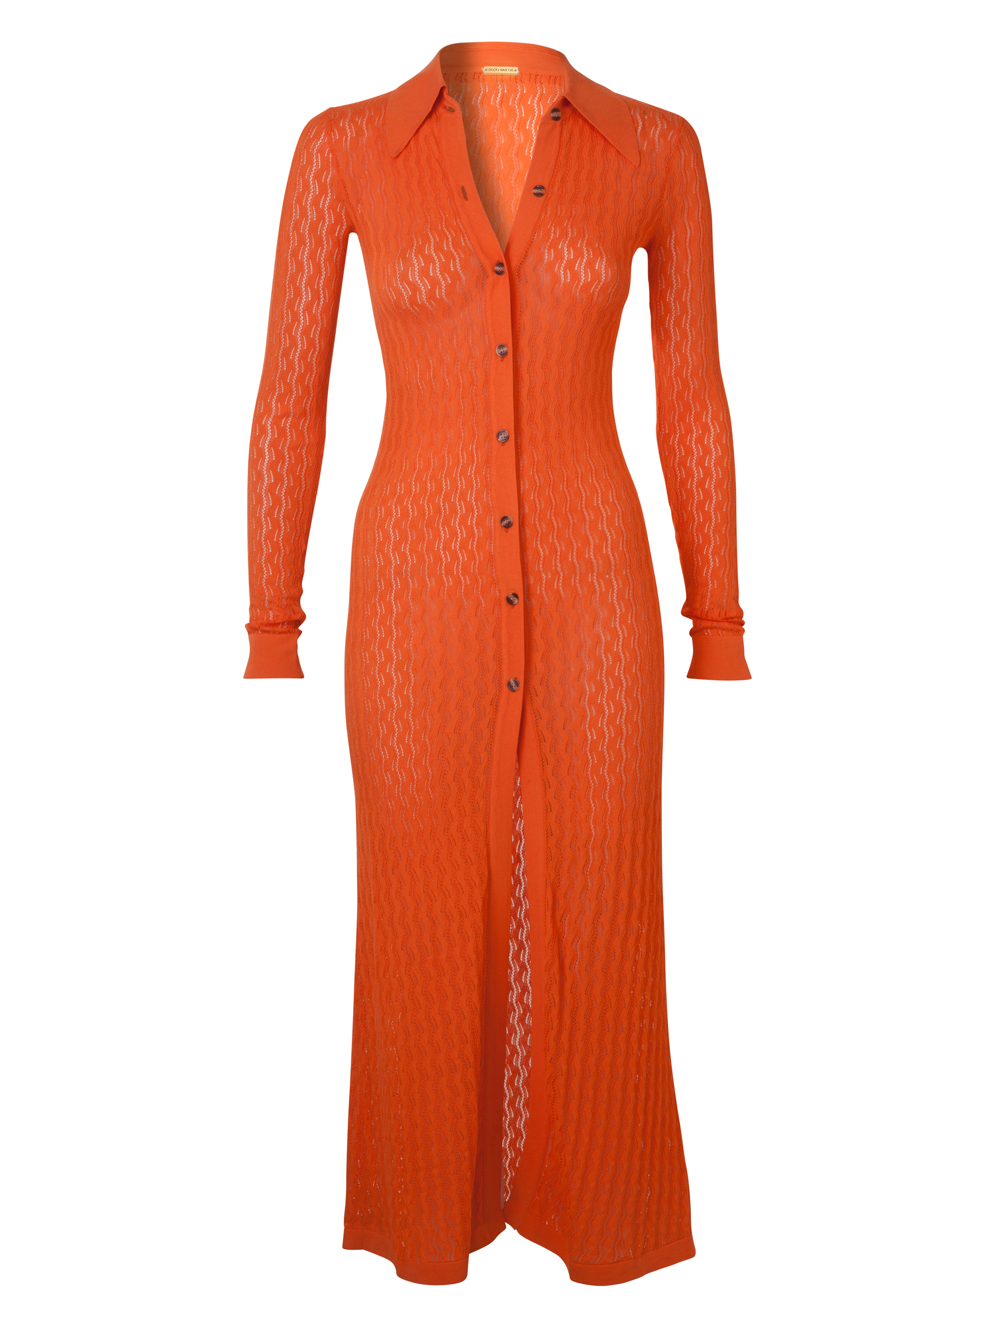 "Tory" dress in orange